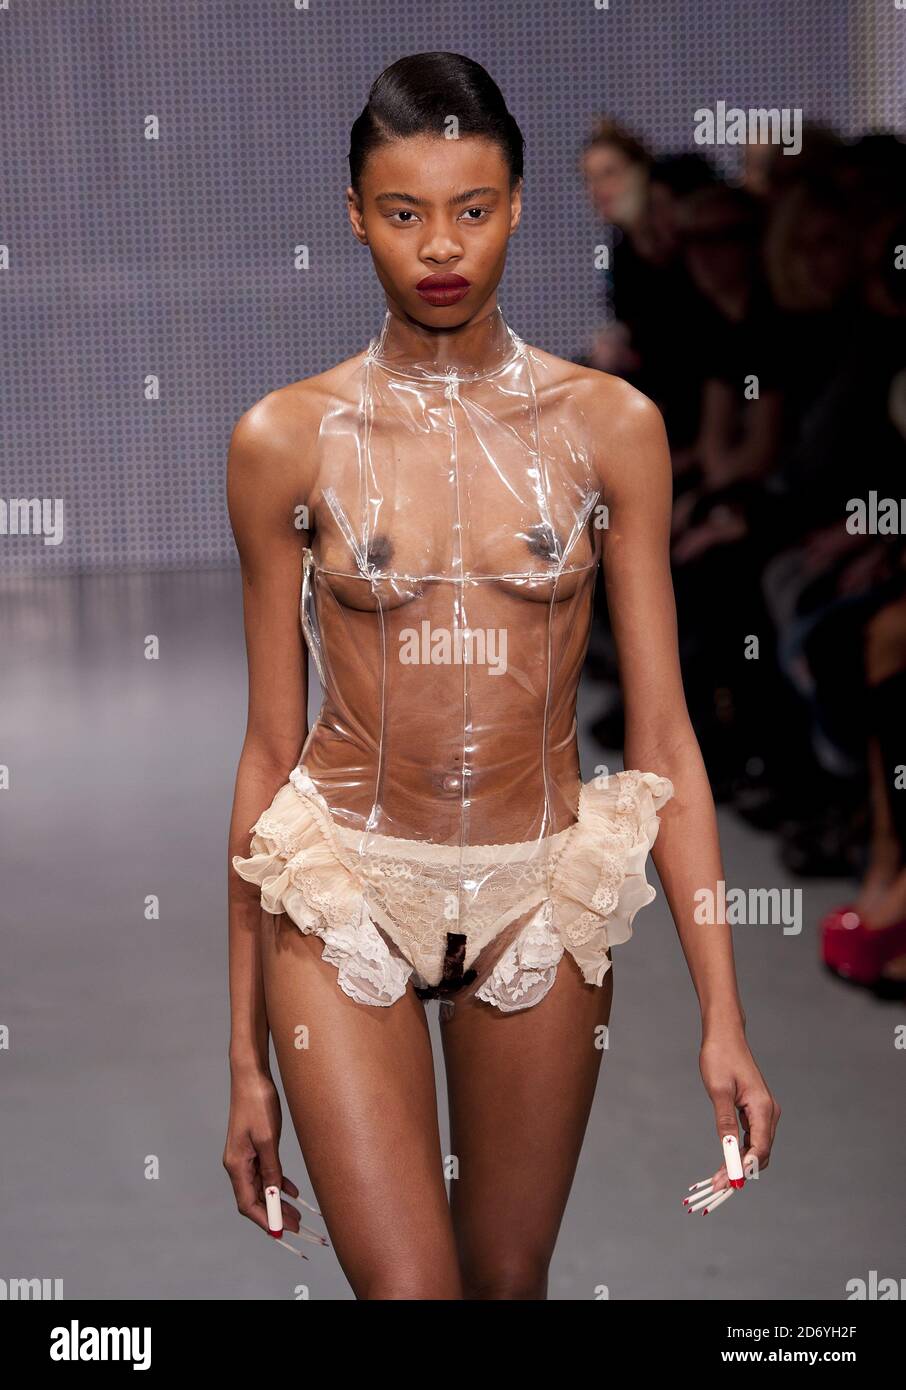 Fashion naked model